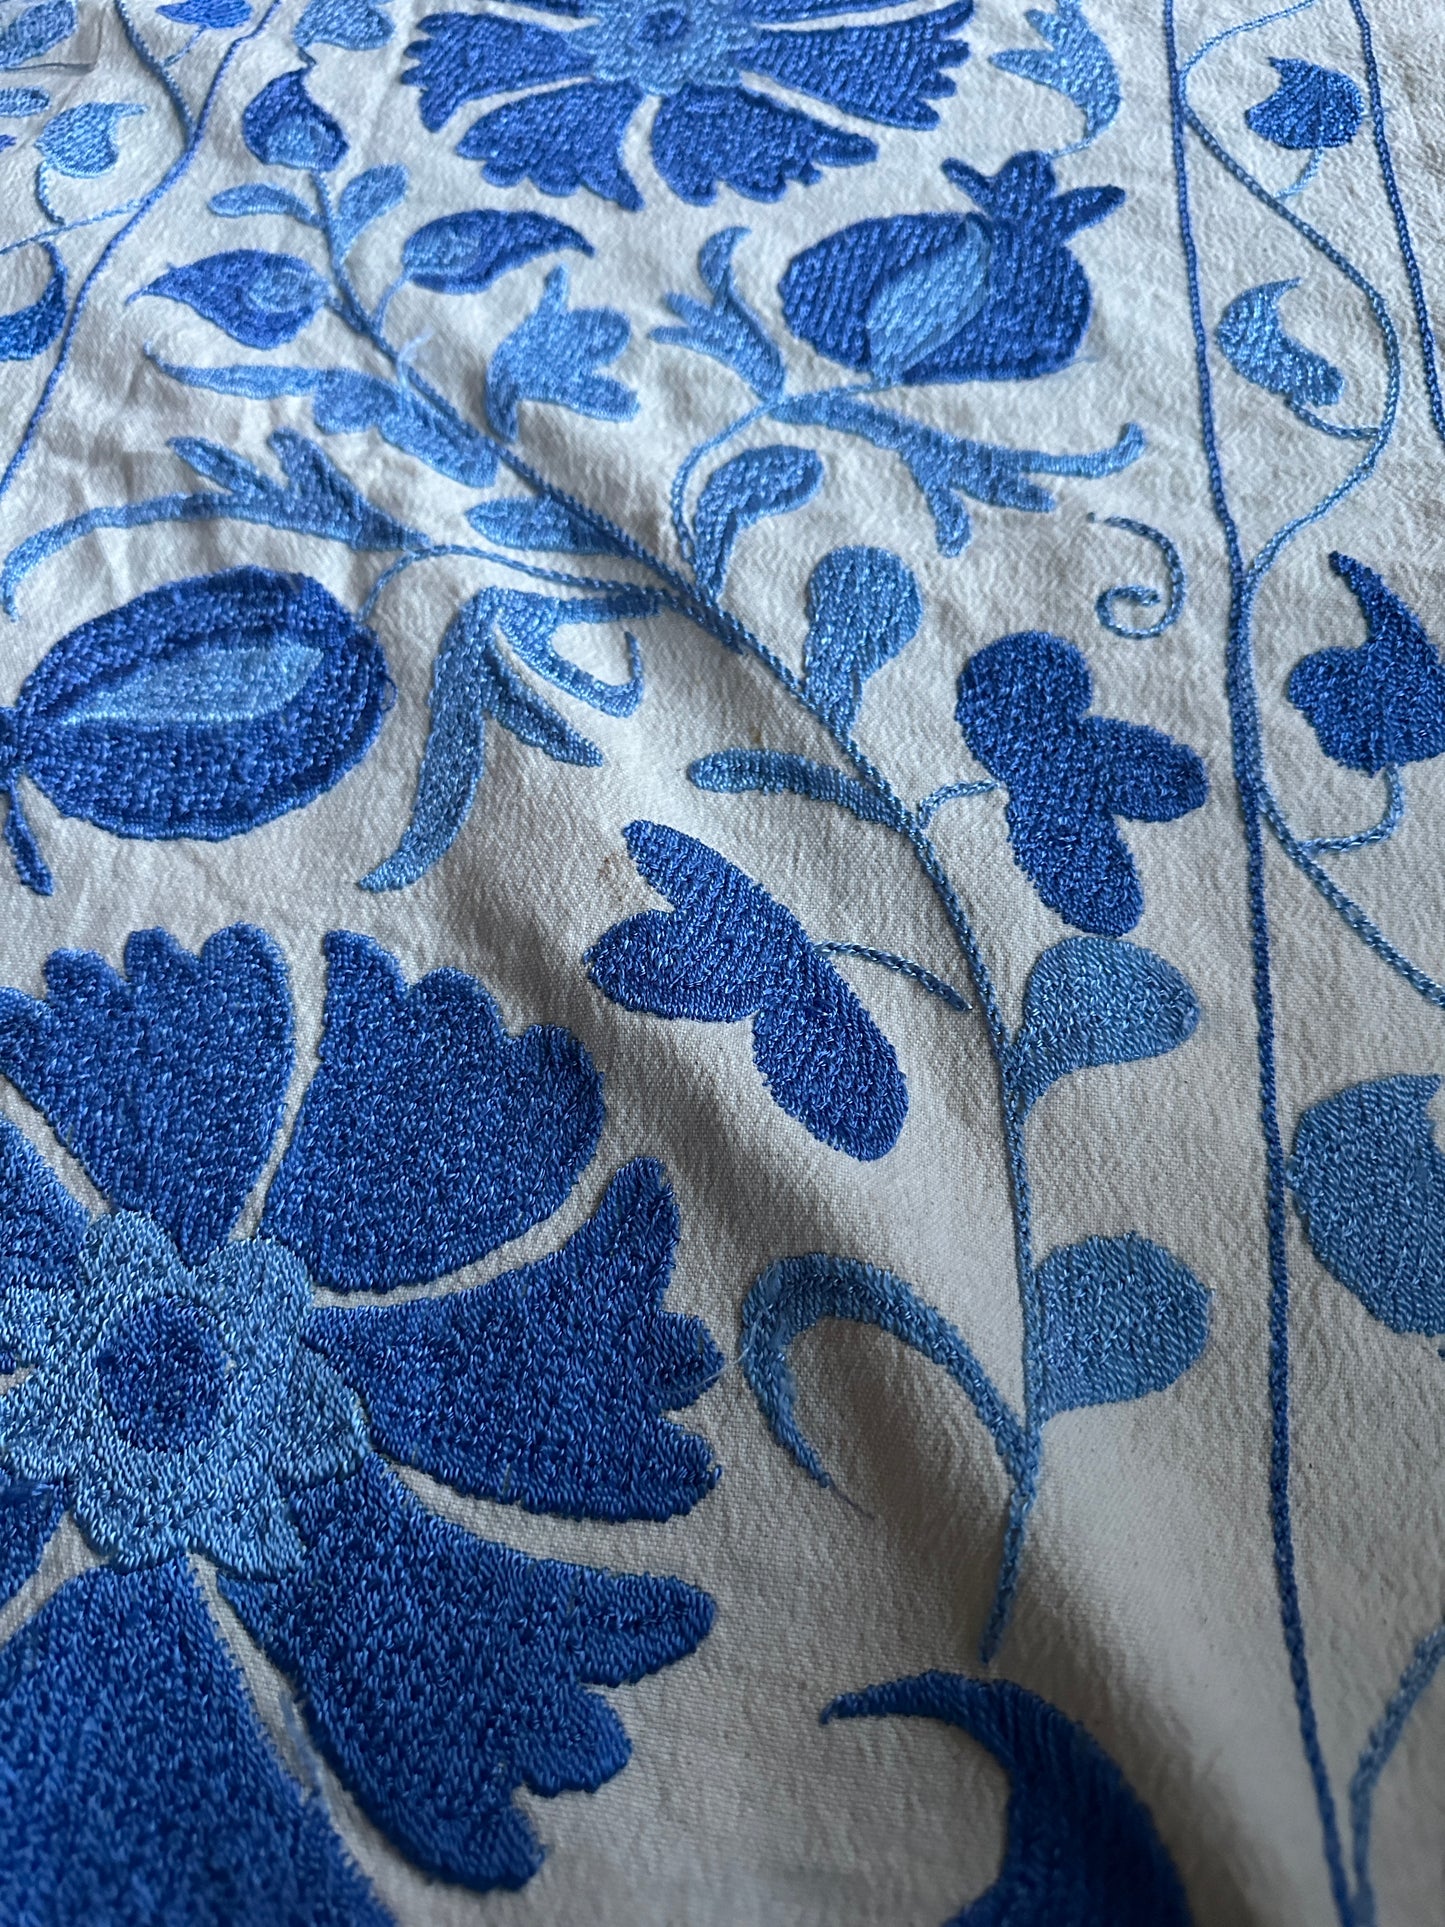 Suzani bleu et blanc | Couvre-lit, tenture murale ou nous pouvons en faire un pouf ou une tête de lit pour vous